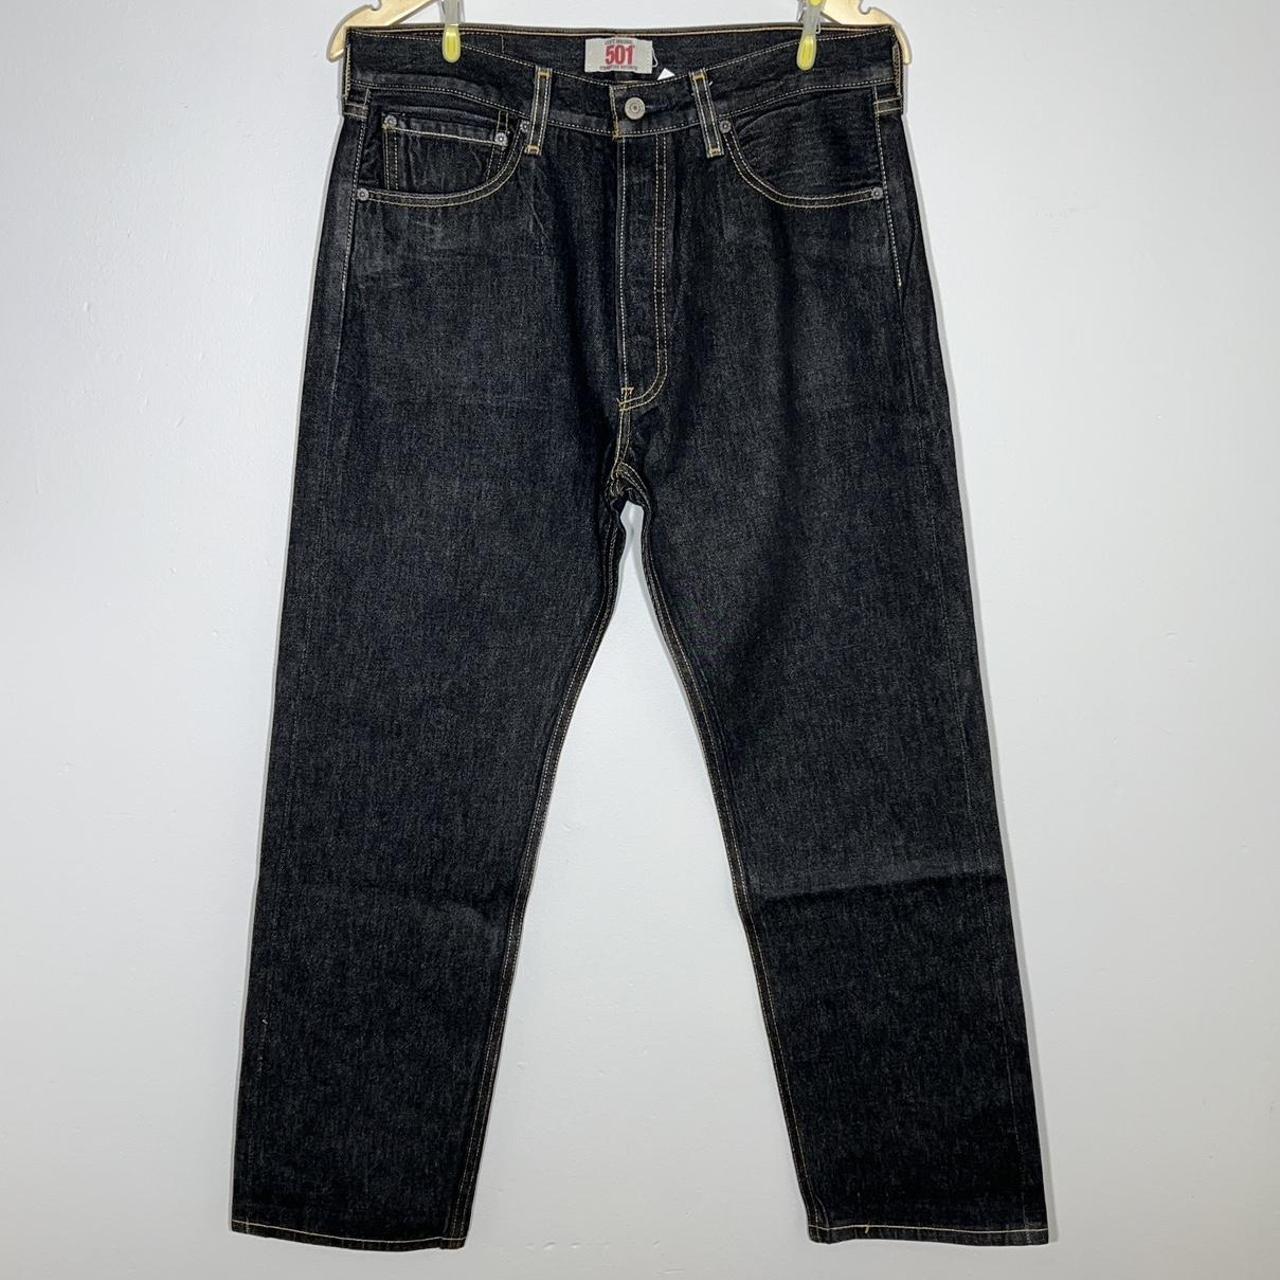 Levis 501 Vintage 90s Dark Wash Blue/Black Jeans... - Depop